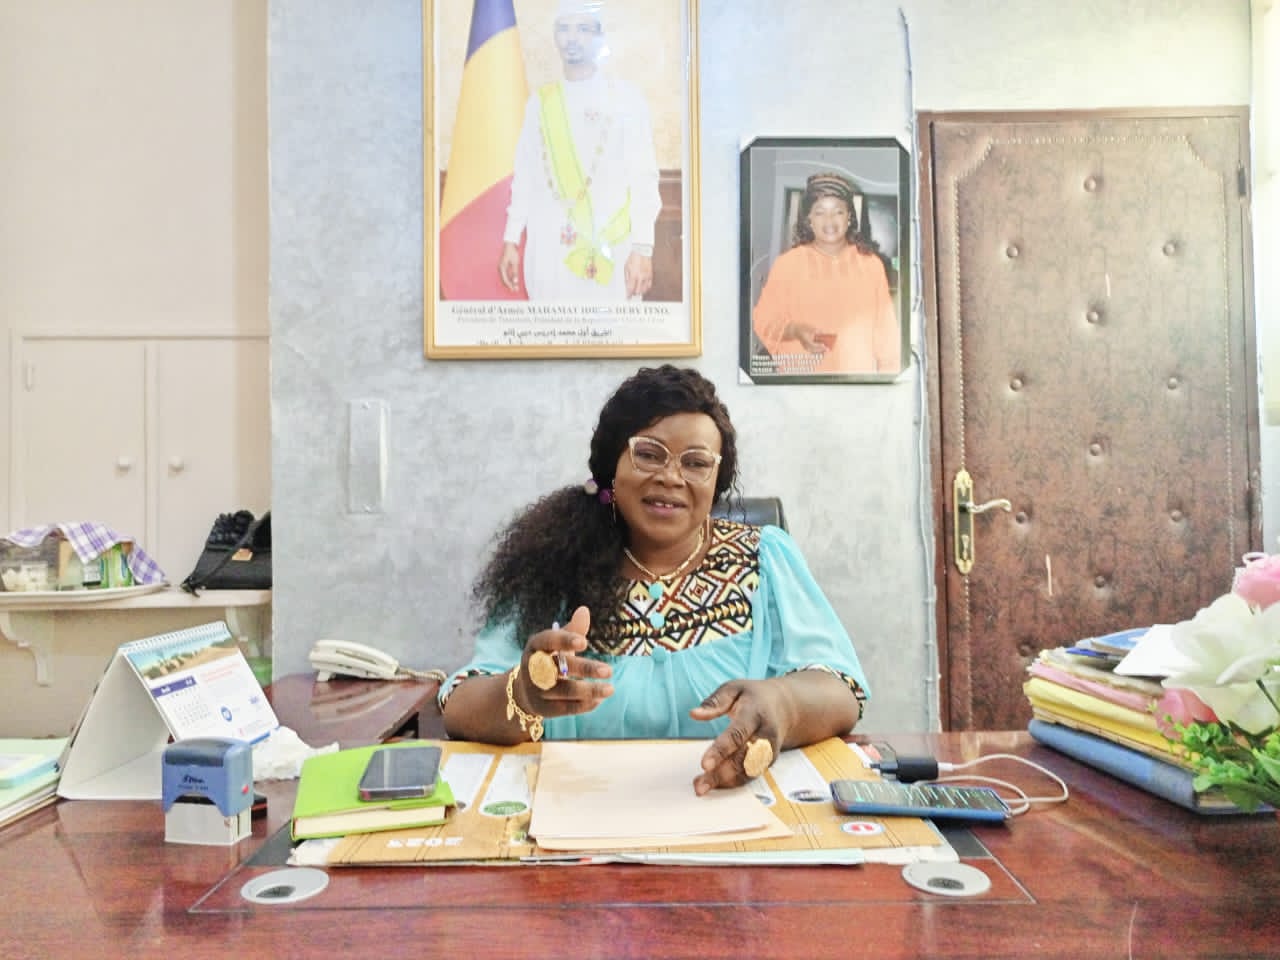 “Il y a eu des progrès significatifs ces dernières années pour améliorer la participation des femmes à la vie politique du Tchad”, Joëlle Madjibeye, maire 3ème adjointe de la ville de N’Djaména